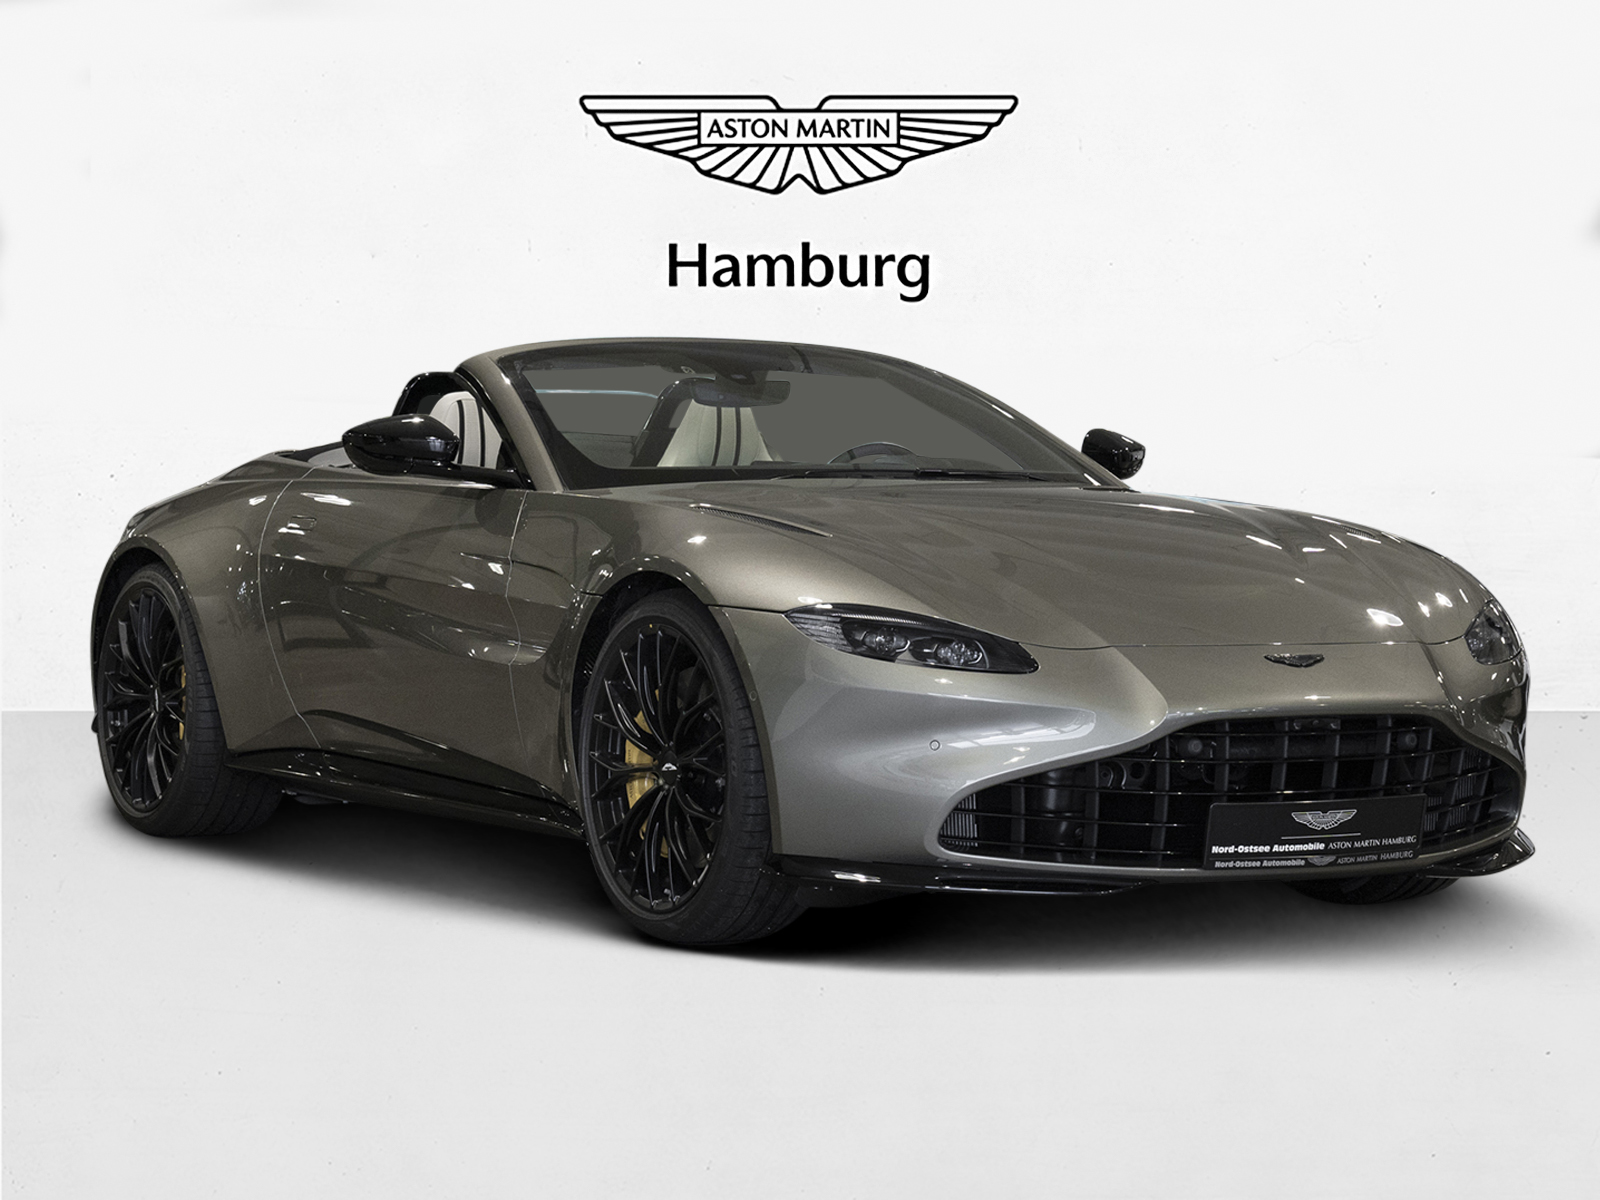 Aston Martin V8 Vantage Roadster - Aston Martin Hamburg